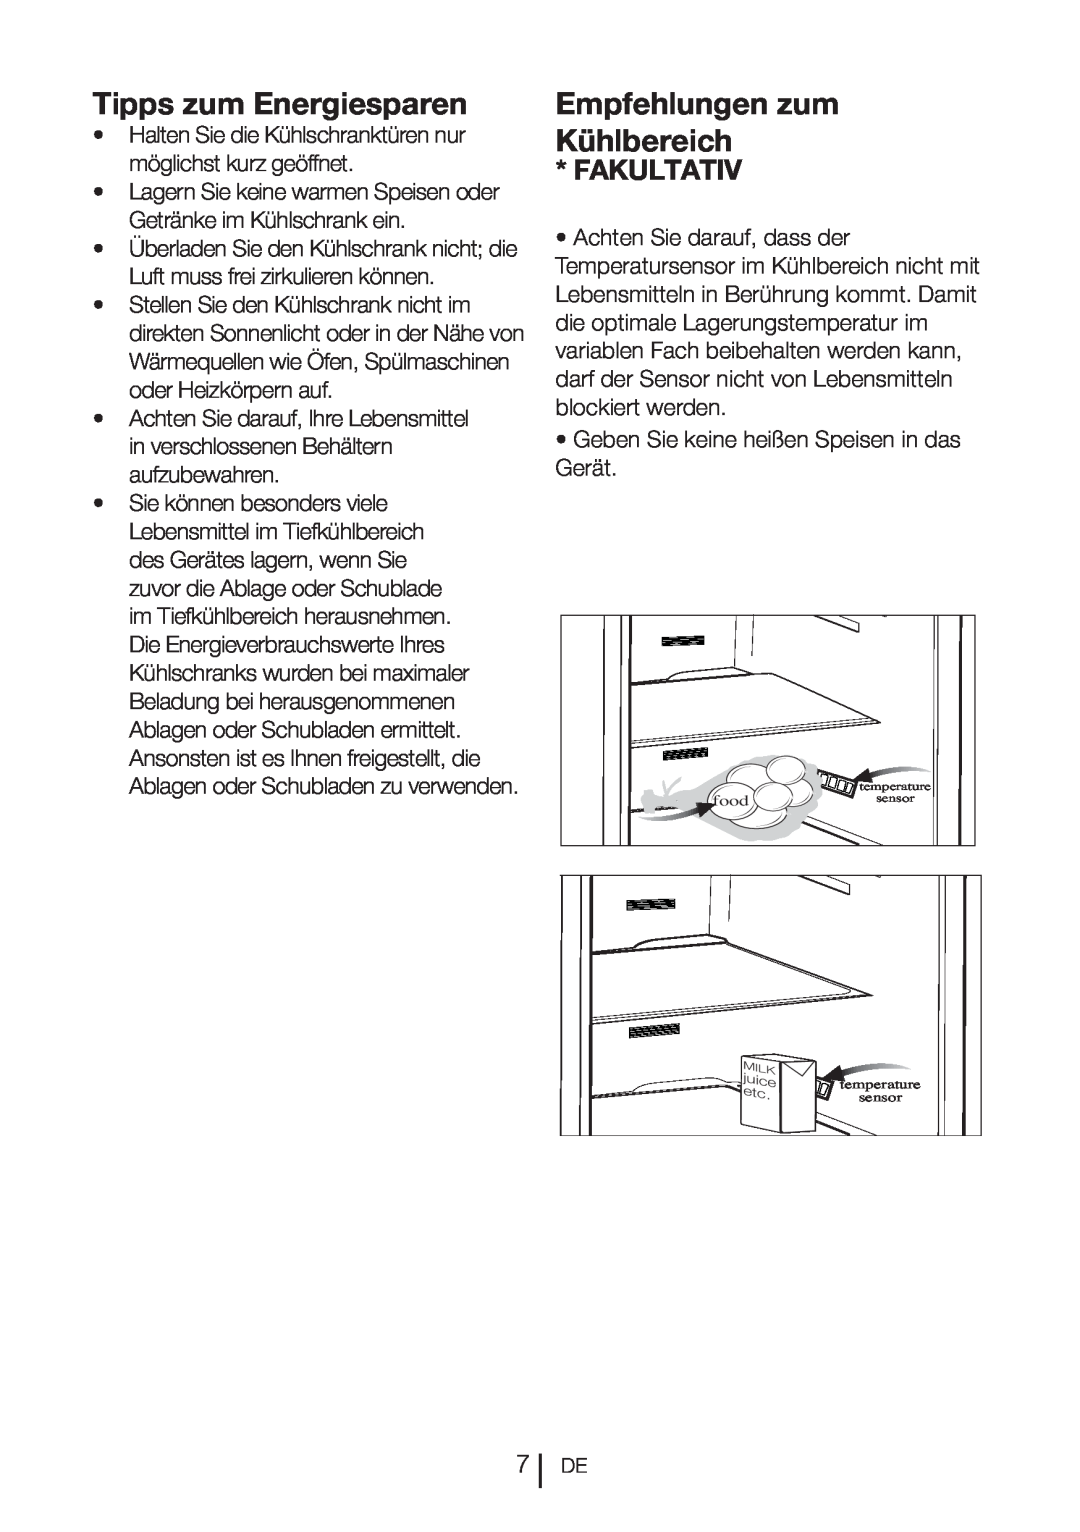 Blomberg DND 1977 XT, DND 1976 XT manual Tipps zum Energiesparen, Empfehlungen zum Kühlbereich, Fakultativ 